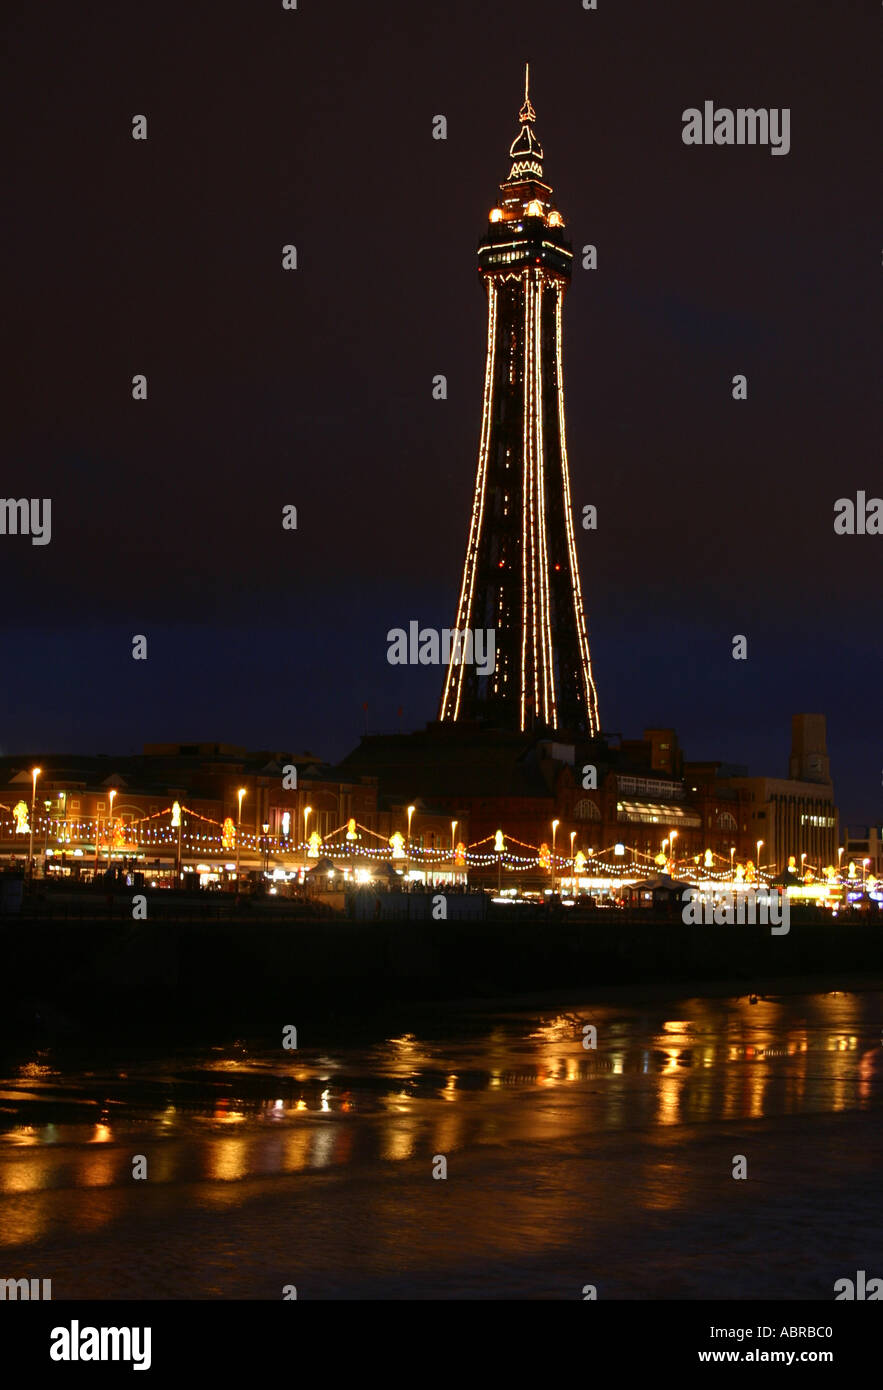 La tour de Blackpool et illuminations de nuit Banque D'Images